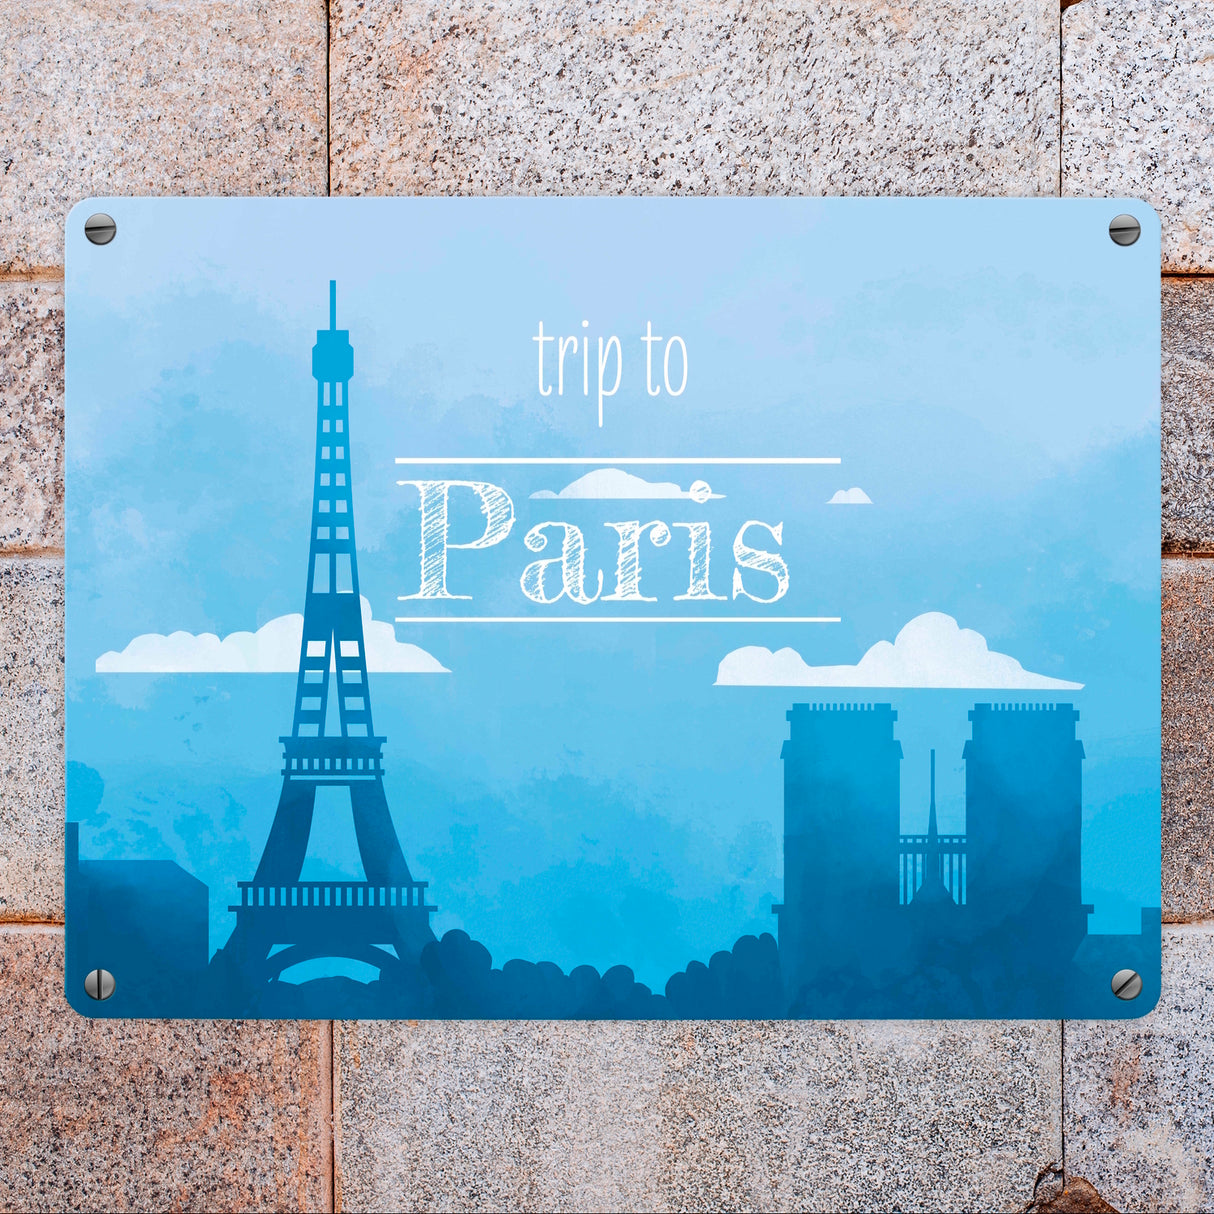 Metallschild in 15x20 cm für Fans von Städtetrips mit der Silhouette von Paris